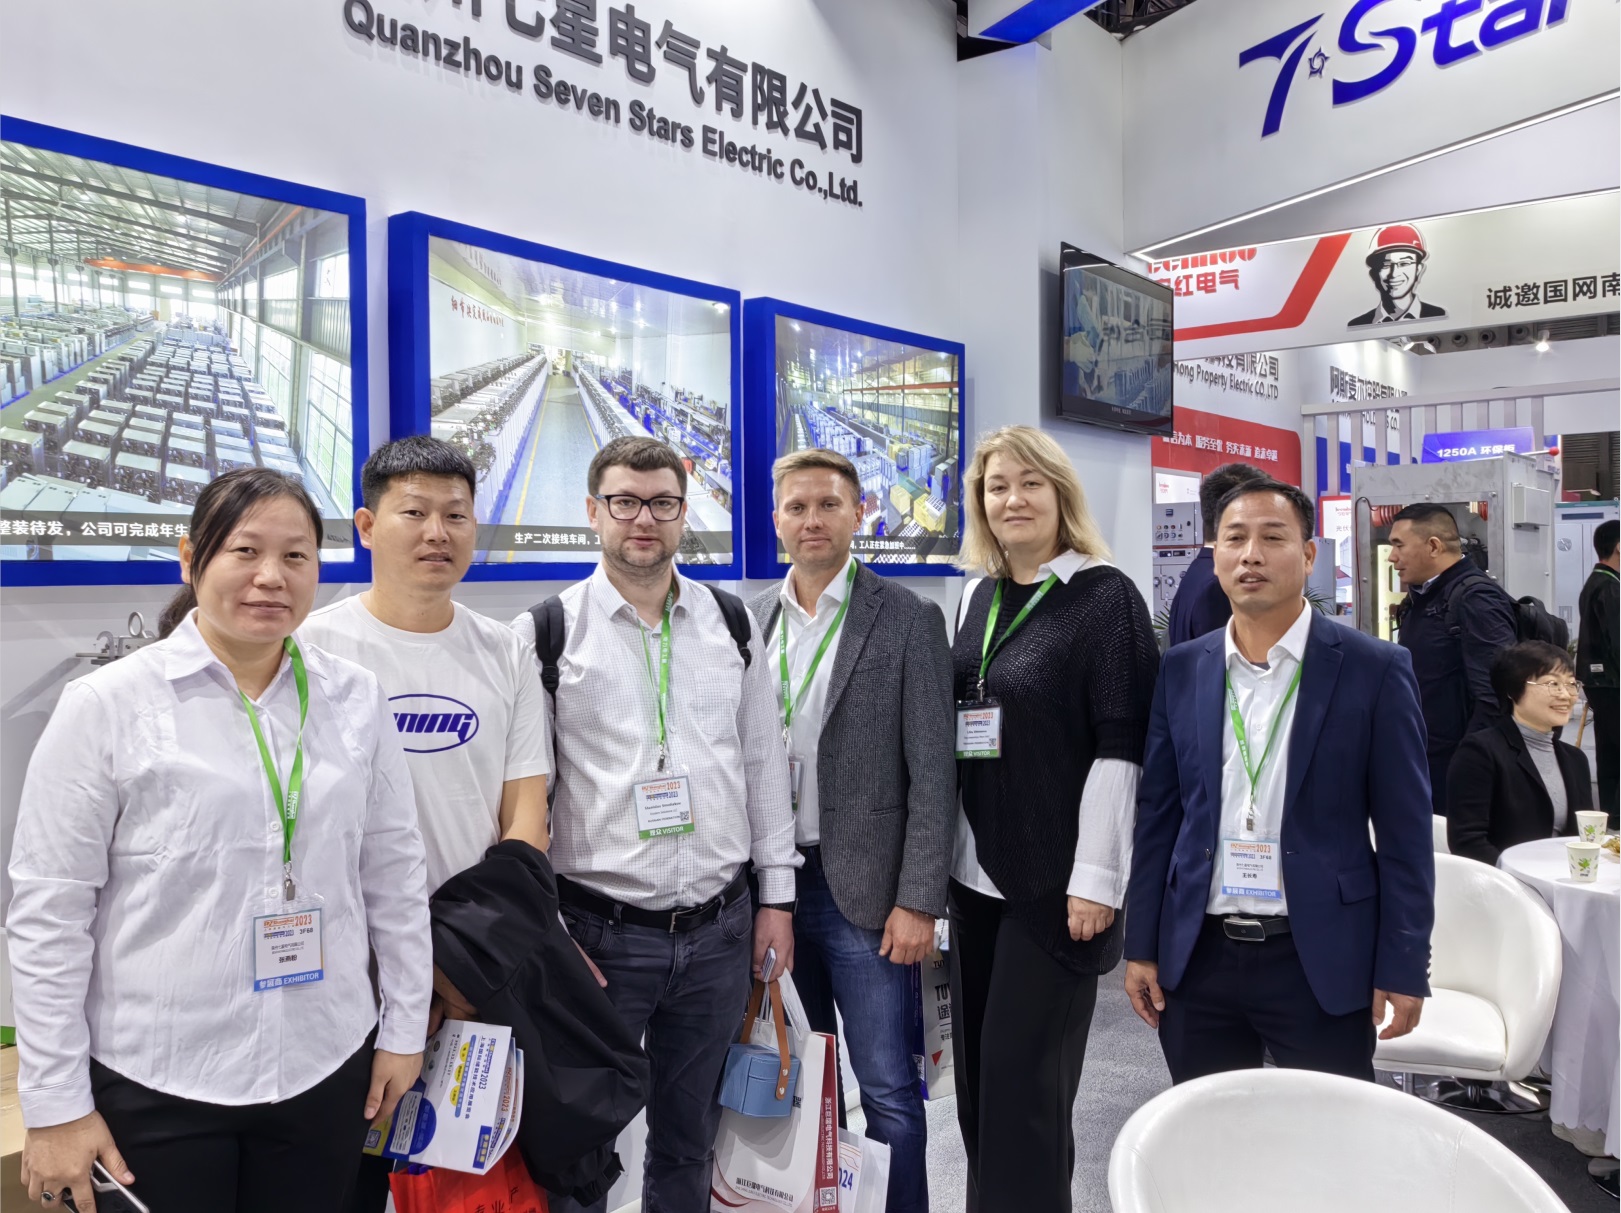 Die EP Power Exhibition von Seven Star Electric Co., Ltd. in Shanghai war ein voller Erfolg